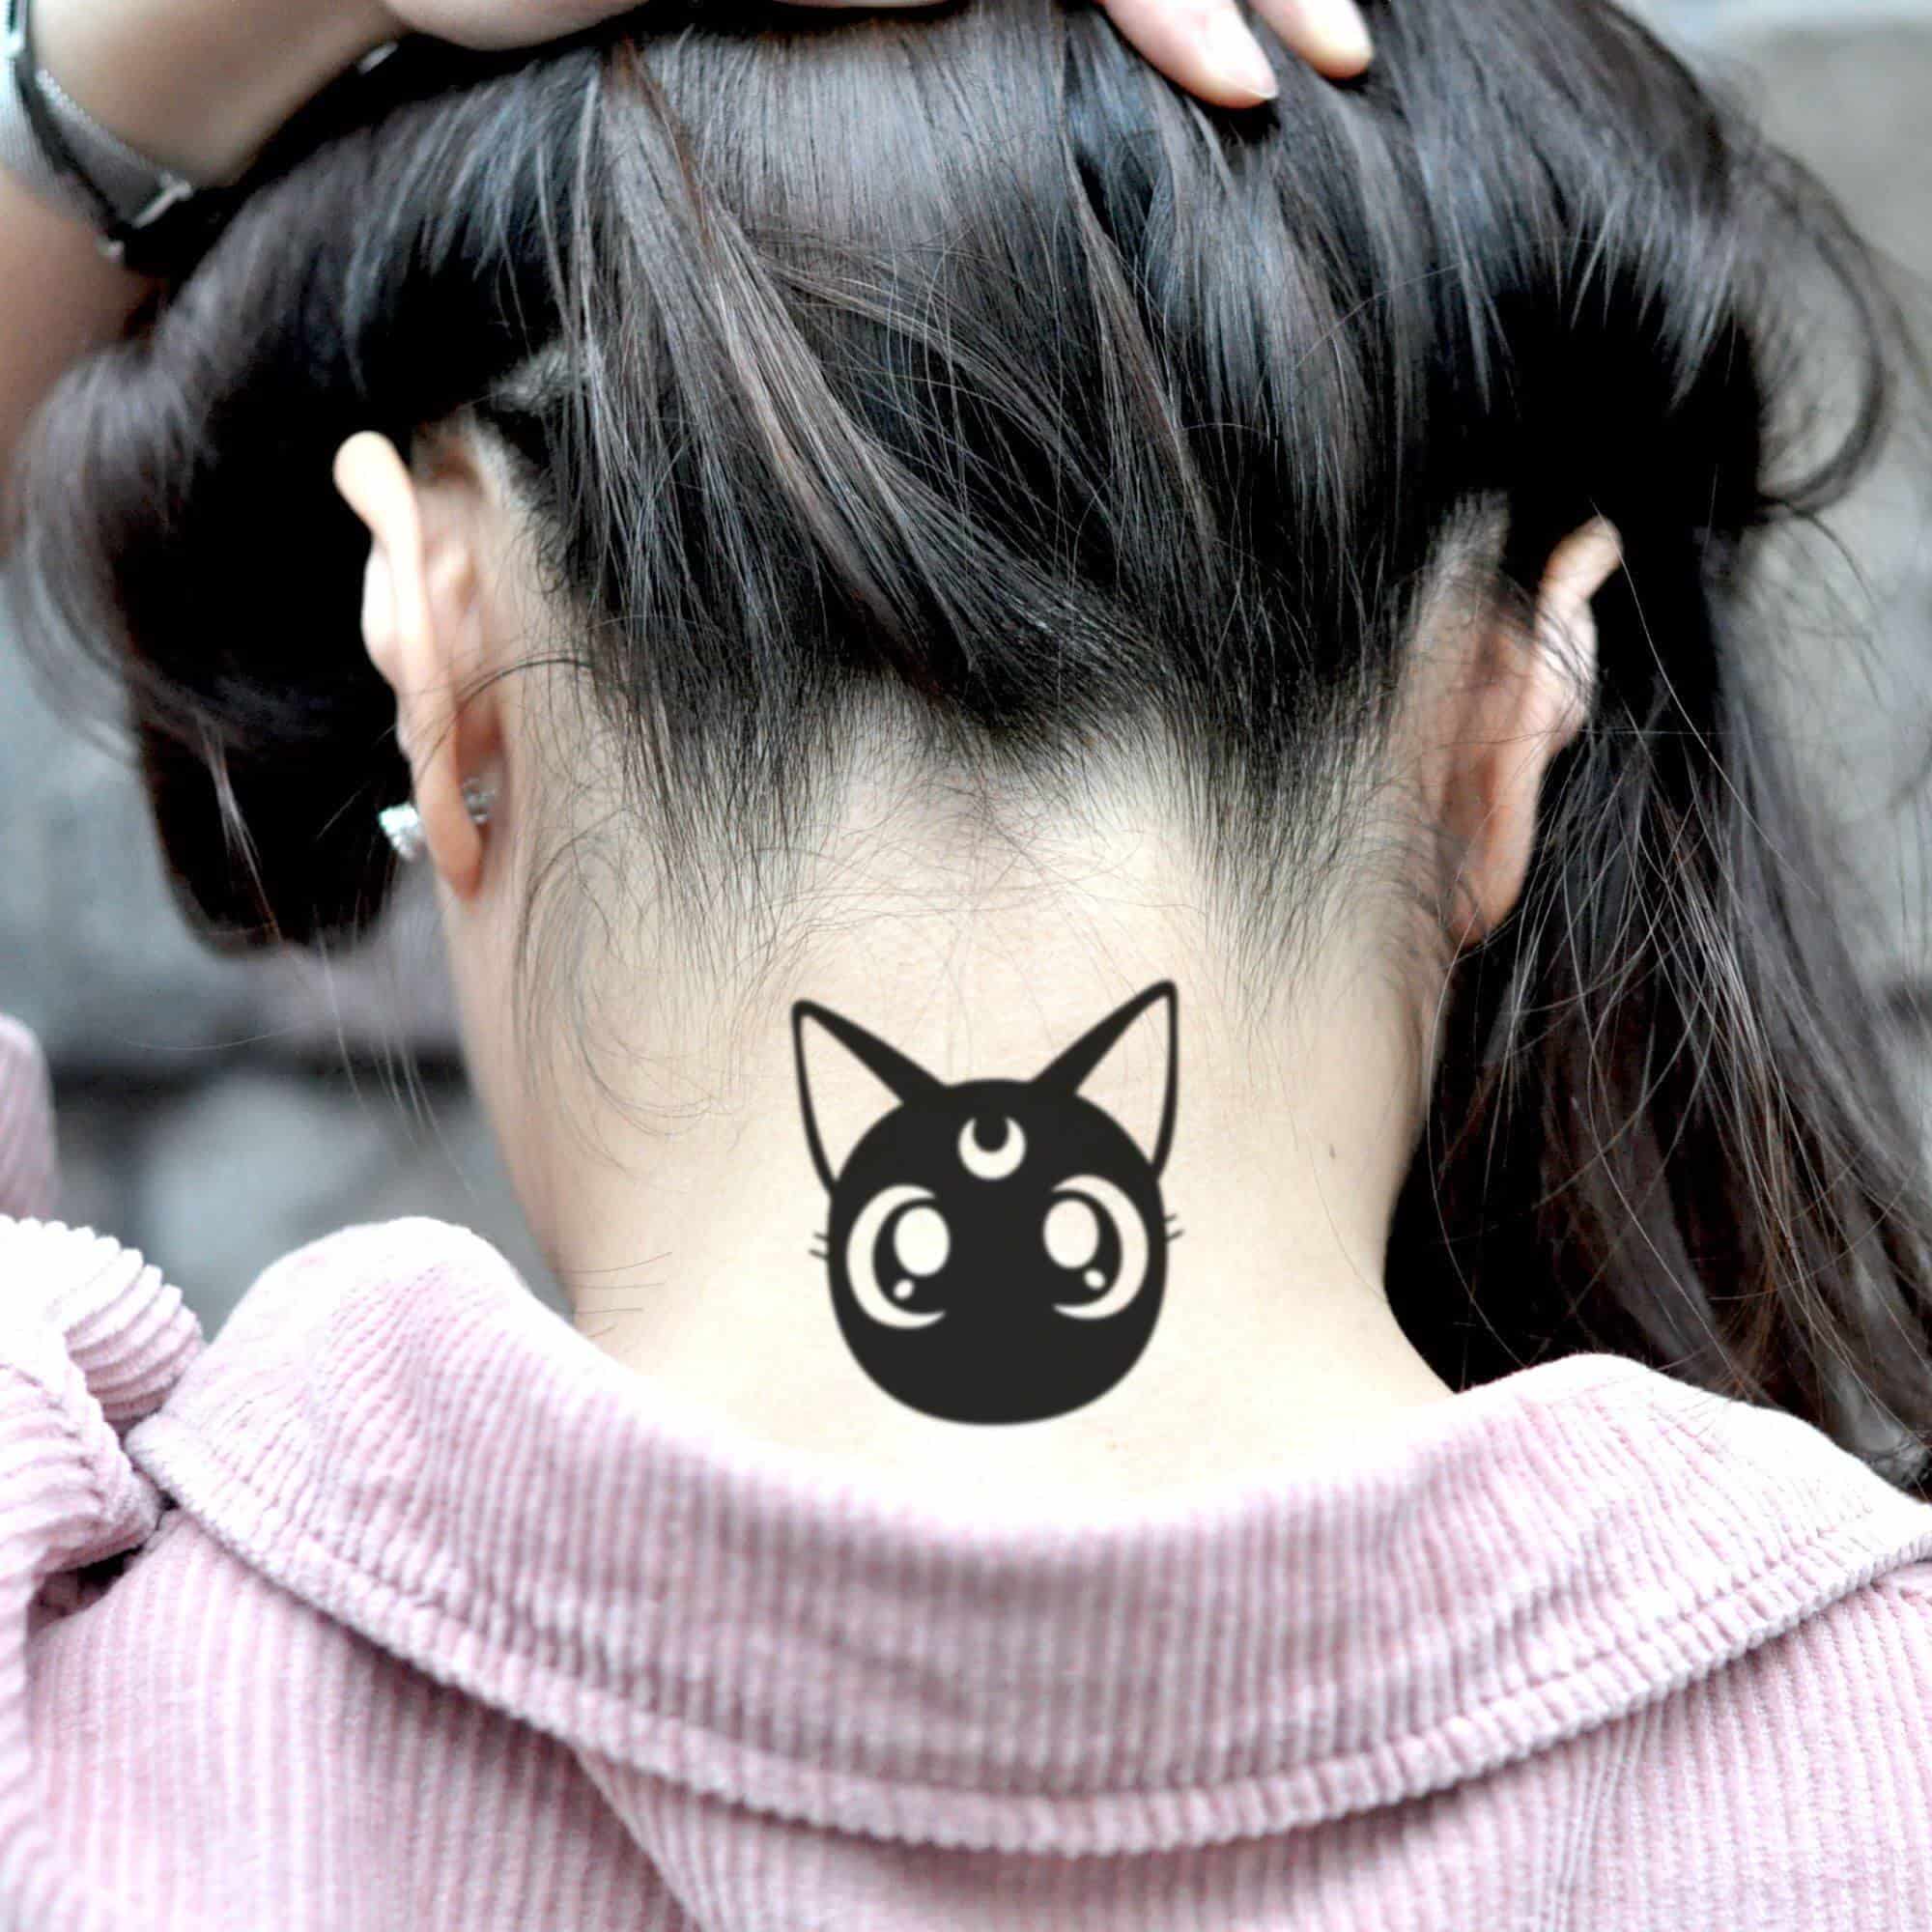 luna sailor moon tattoo on neck